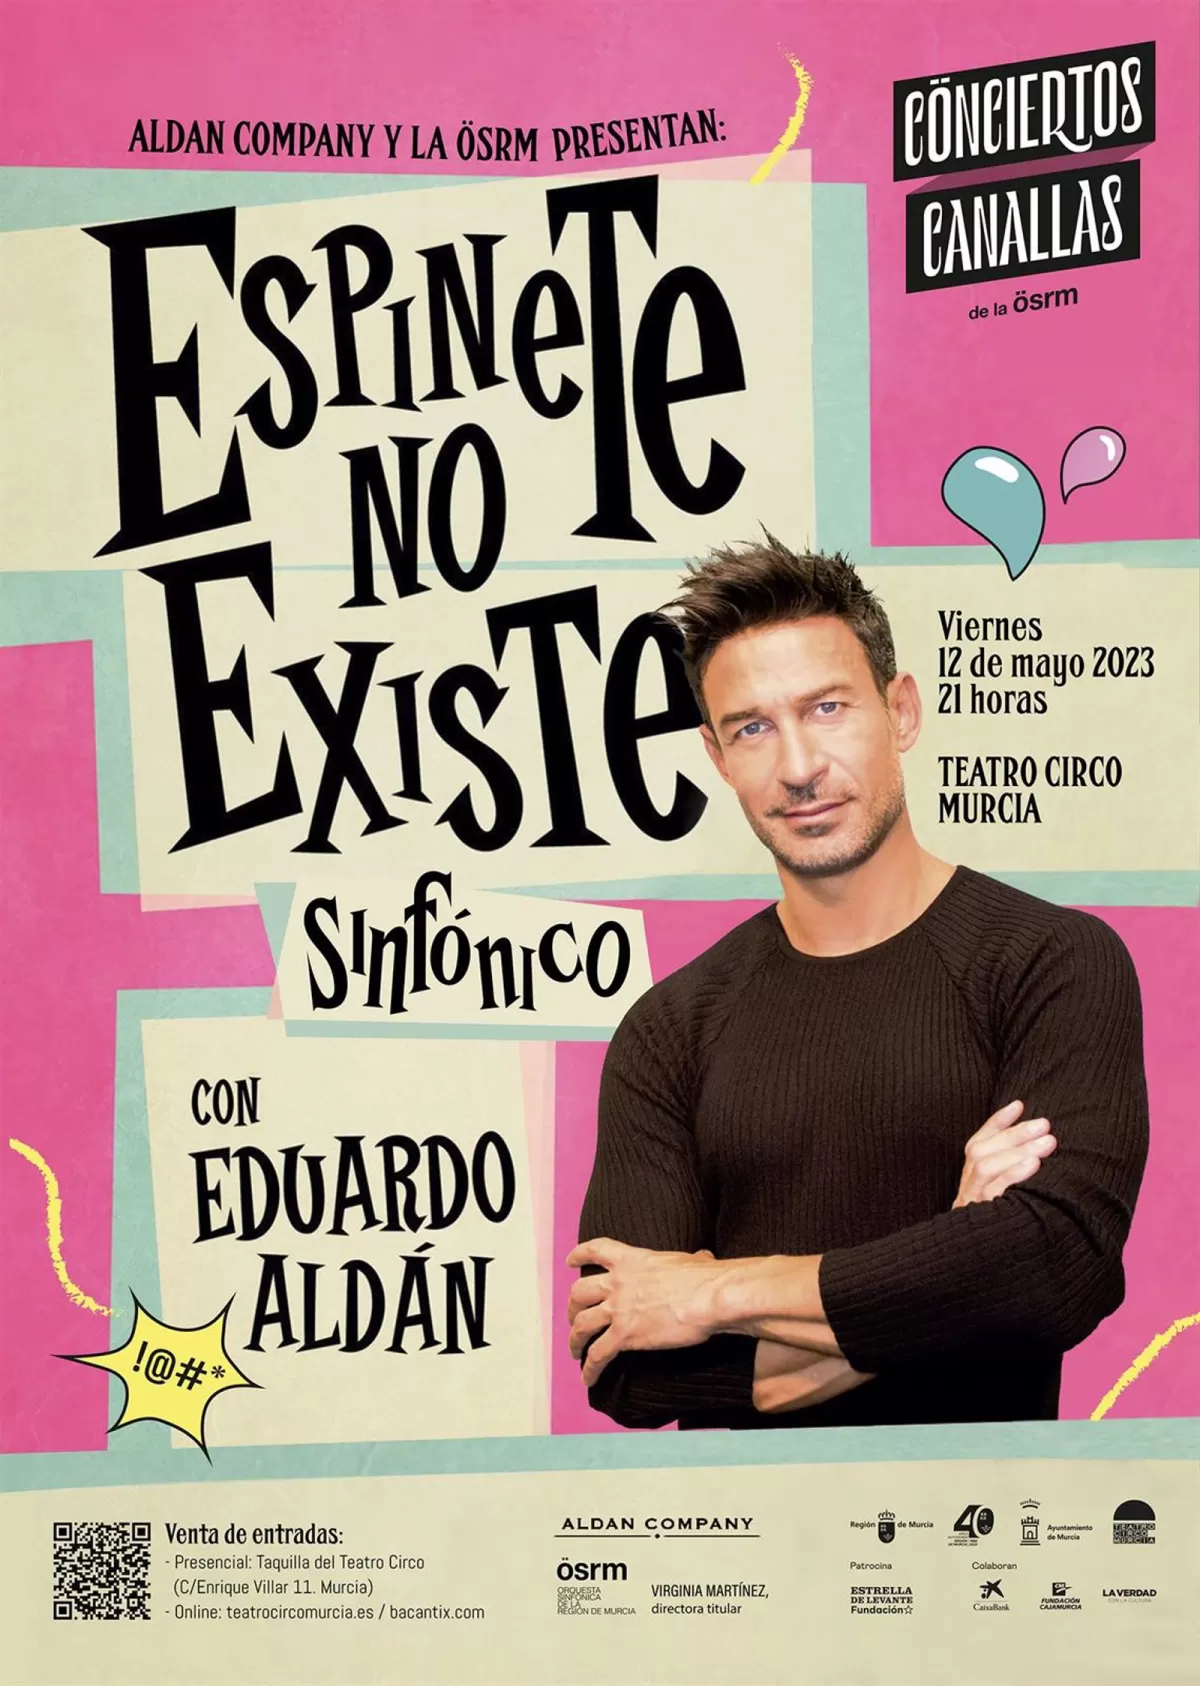 Eduardo Aldán se une a los 'Conciertos Canallas' de la OSRM con su show 'Espinete no existe'